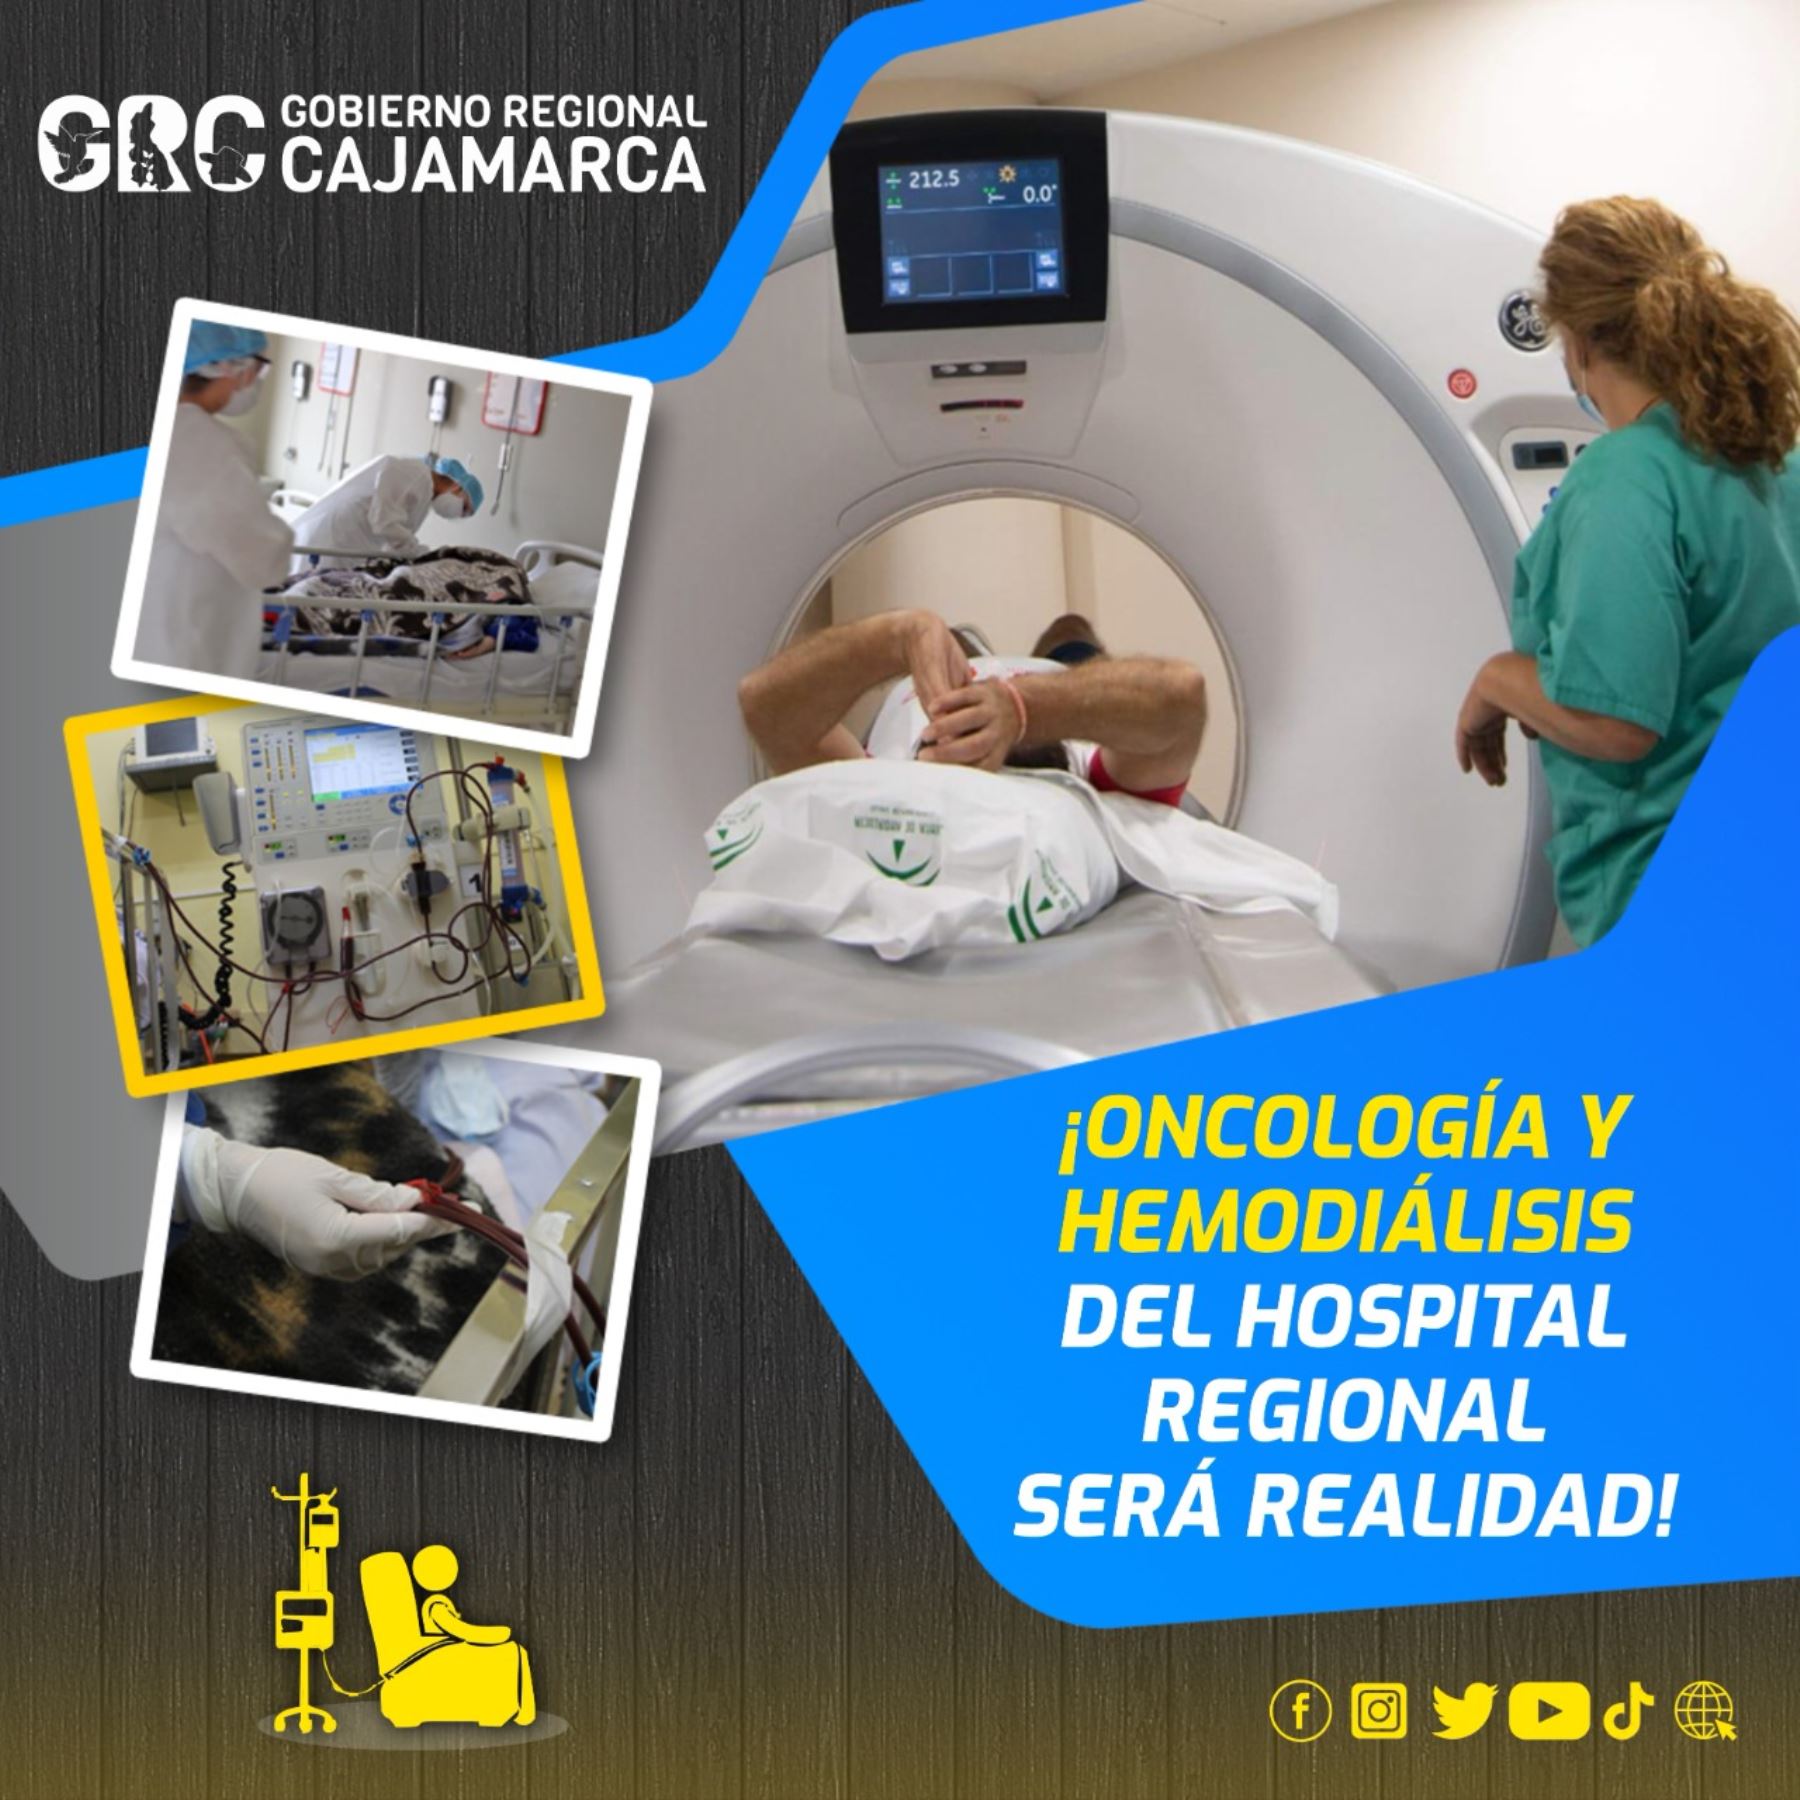 Cajamarca: Gore hará realidad servicios de oncología y hemodiálisis del Hospital Regional